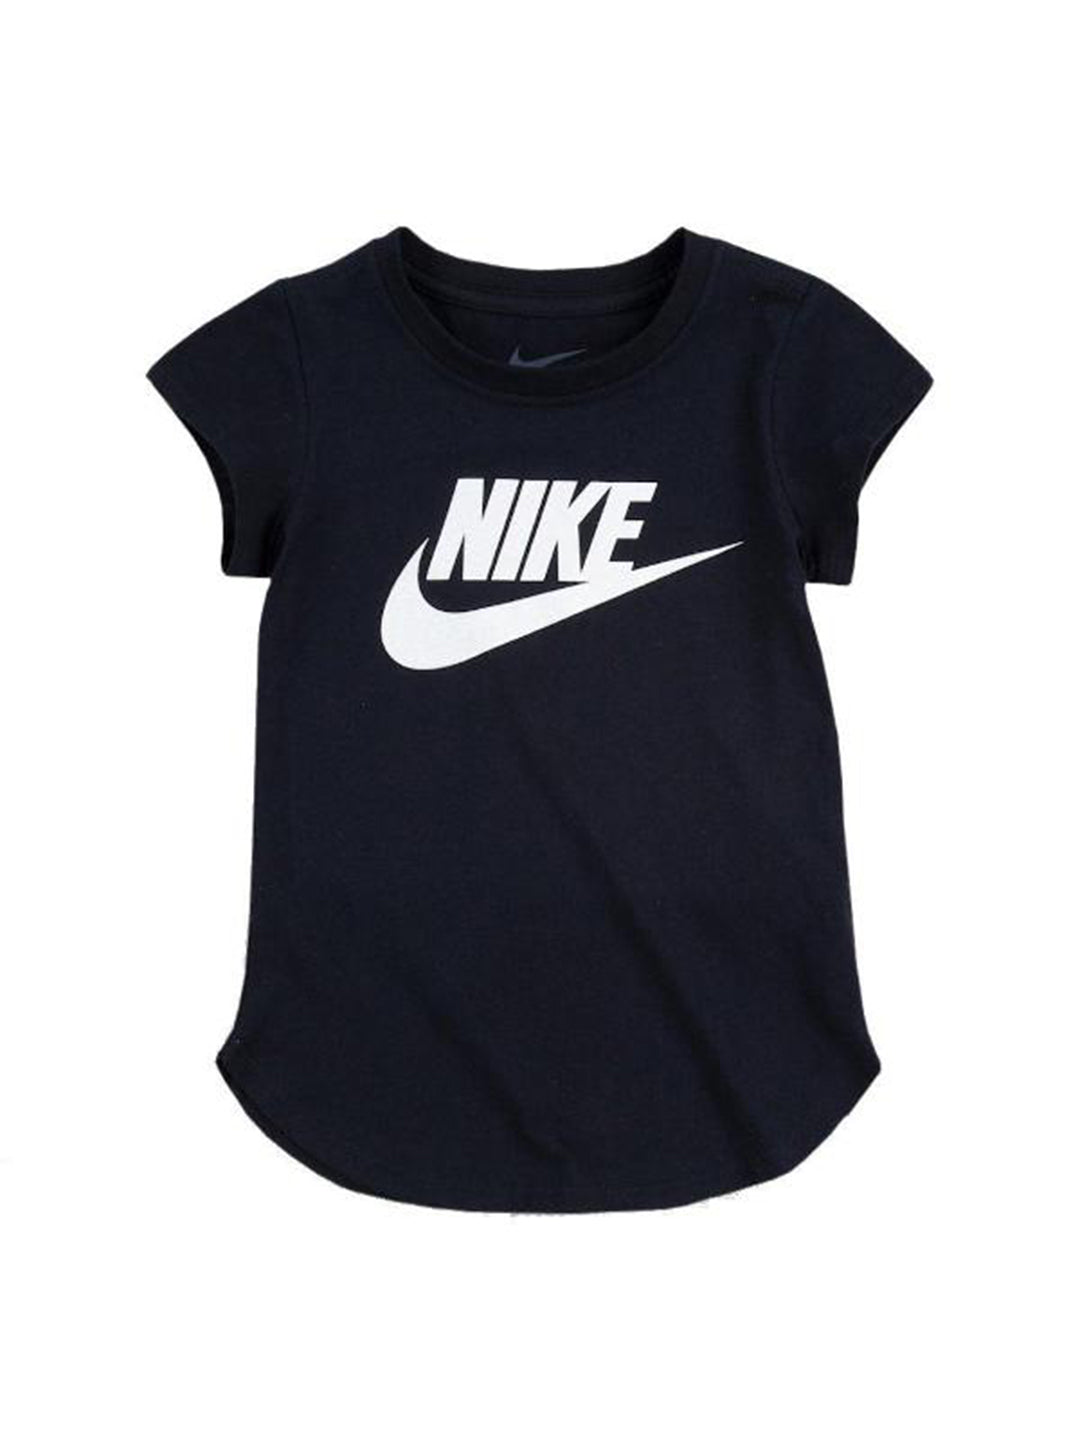 Nike kids t shirt nero